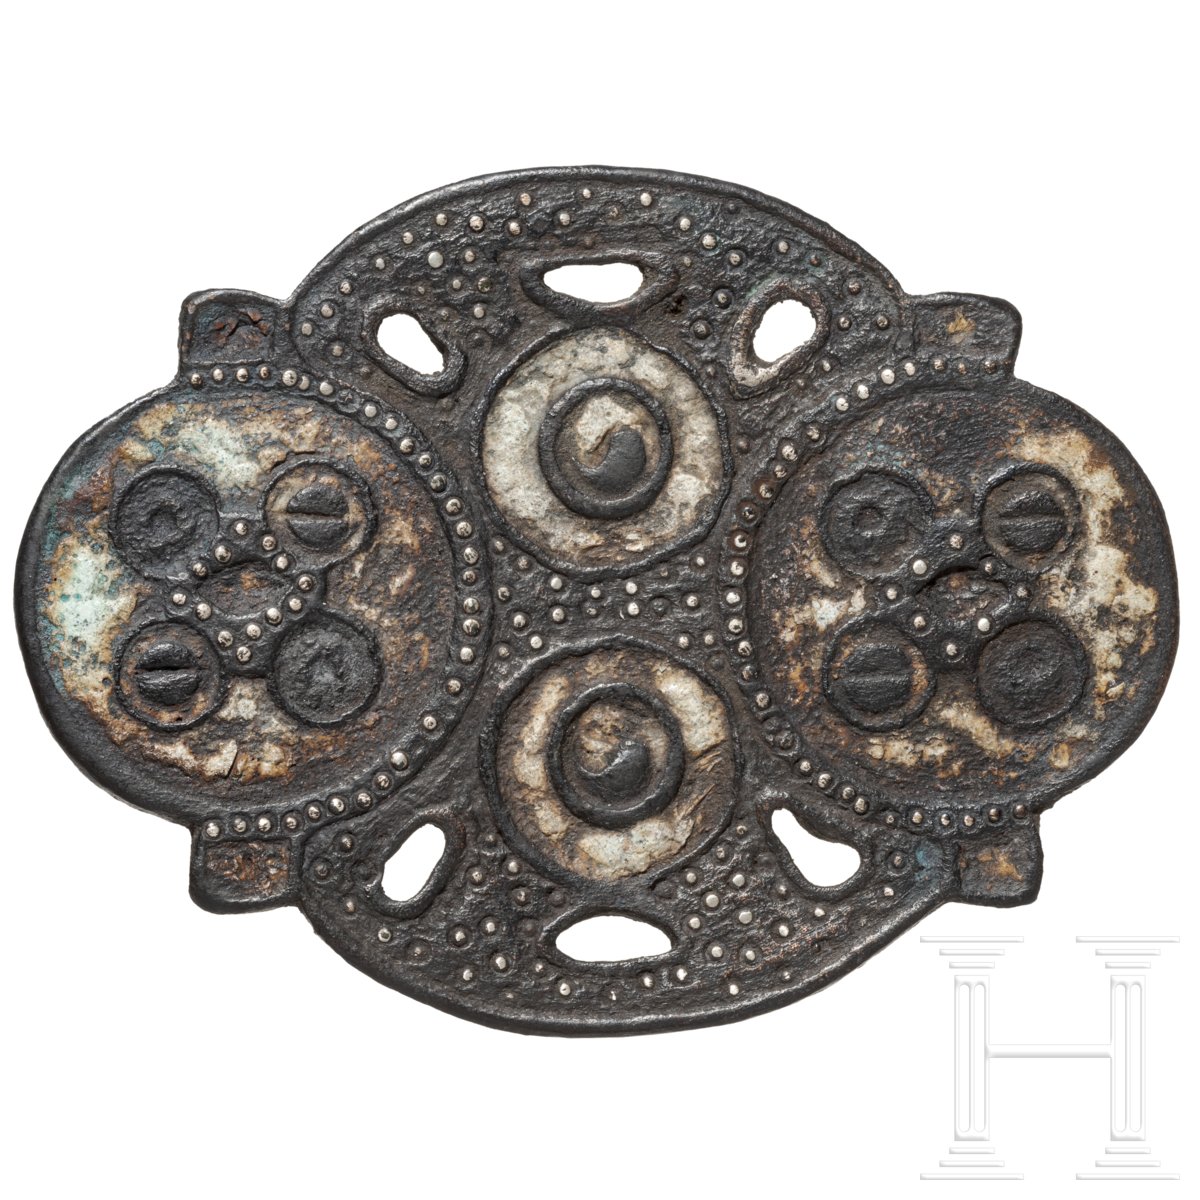 Pferdegeschirrbeschlag mit Emaille- und Silbereinlagen, keltisch, 1. Jhdt. v. - 1. Jhdt. n. Chr.